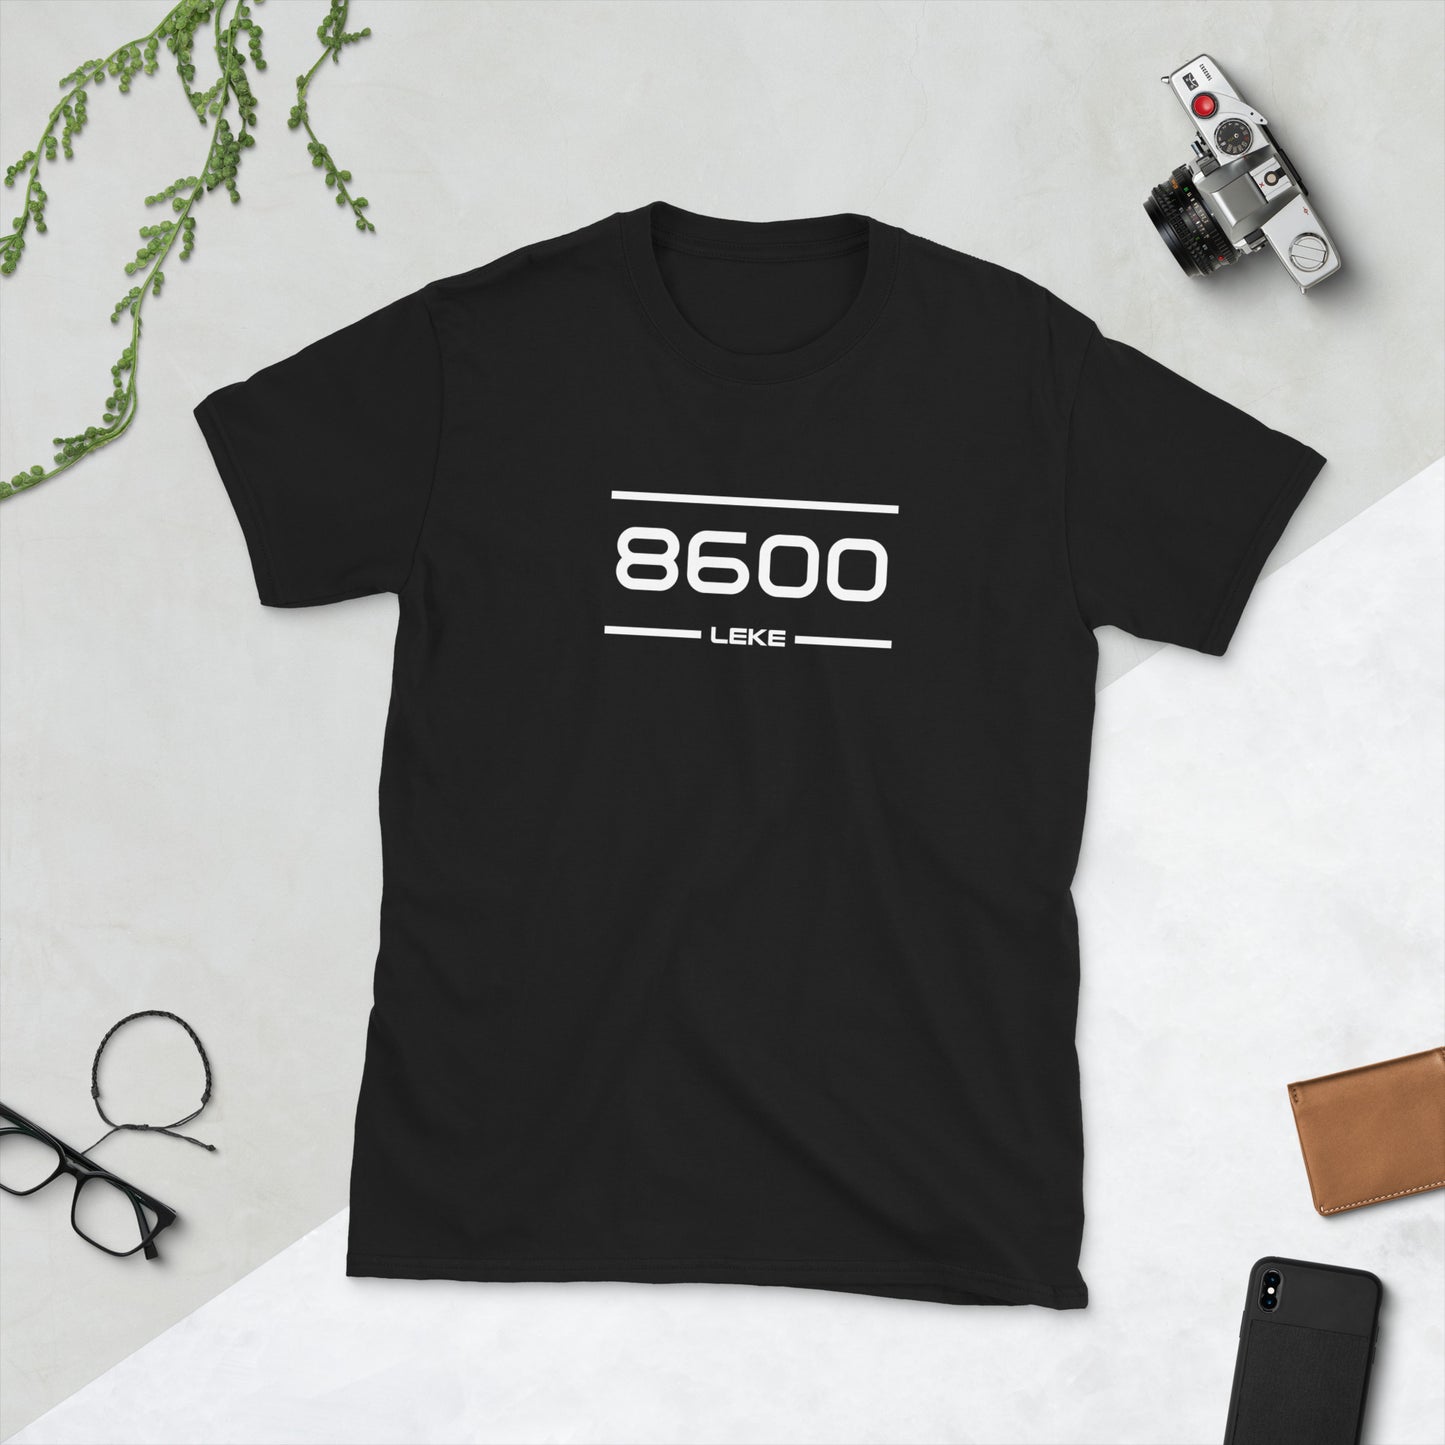 Tshirt - 8600 - Leke